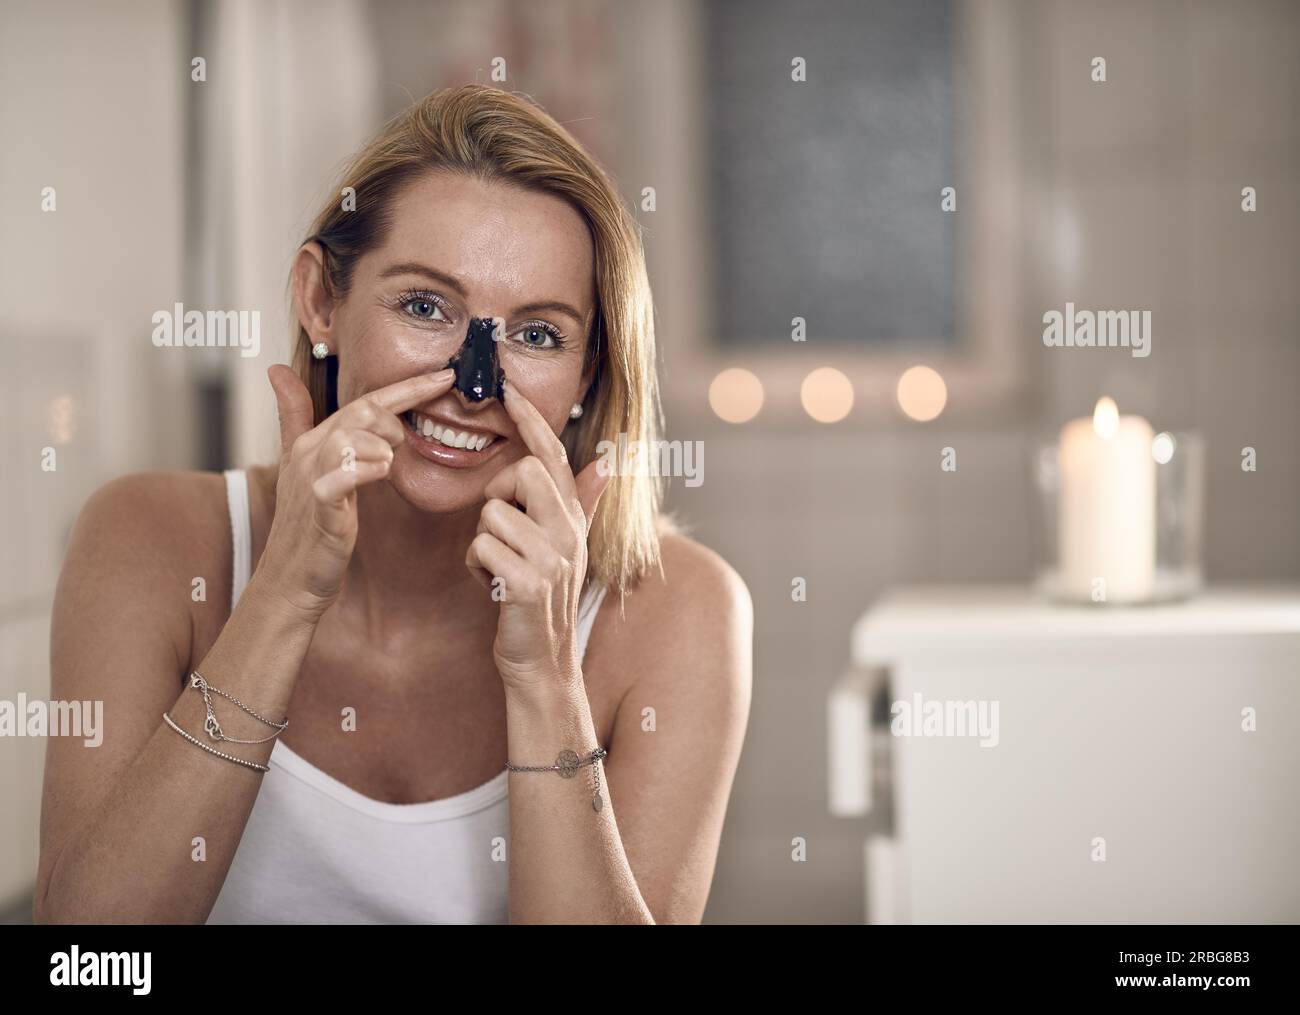 Attraktive blonde Frau mittleren Alters, die eine Anti-Aging-Gesichtsmaske auf ihre Nase in einem Badezimmer mit brennenden Kerzen in einem Konzept von Schönheit, Hautpflege Stockfoto